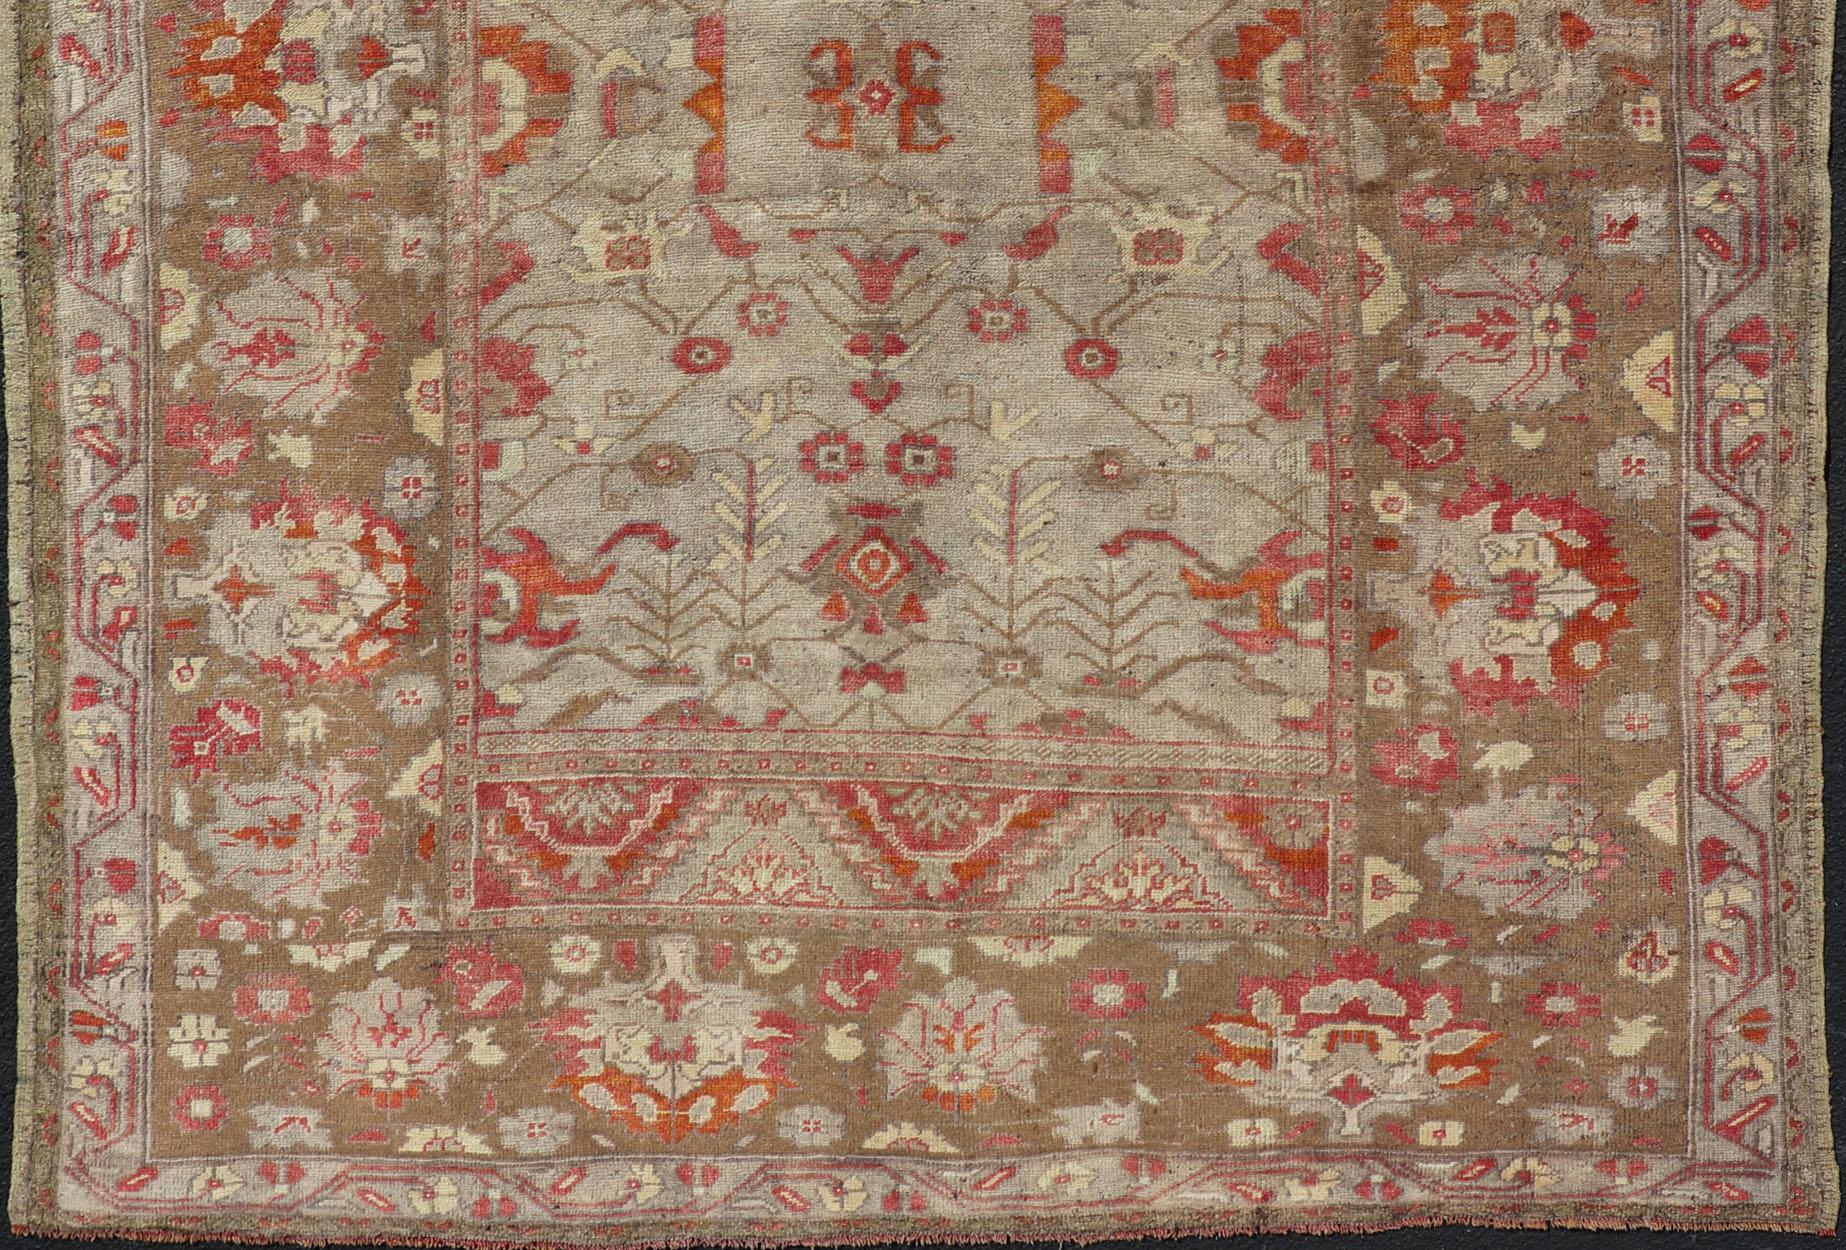 Quadratischer antiker türkischer Oushak-Teppich mit Blumenmuster in Grün, Rot, Taupe und Hellbraun (Handgeknüpft)